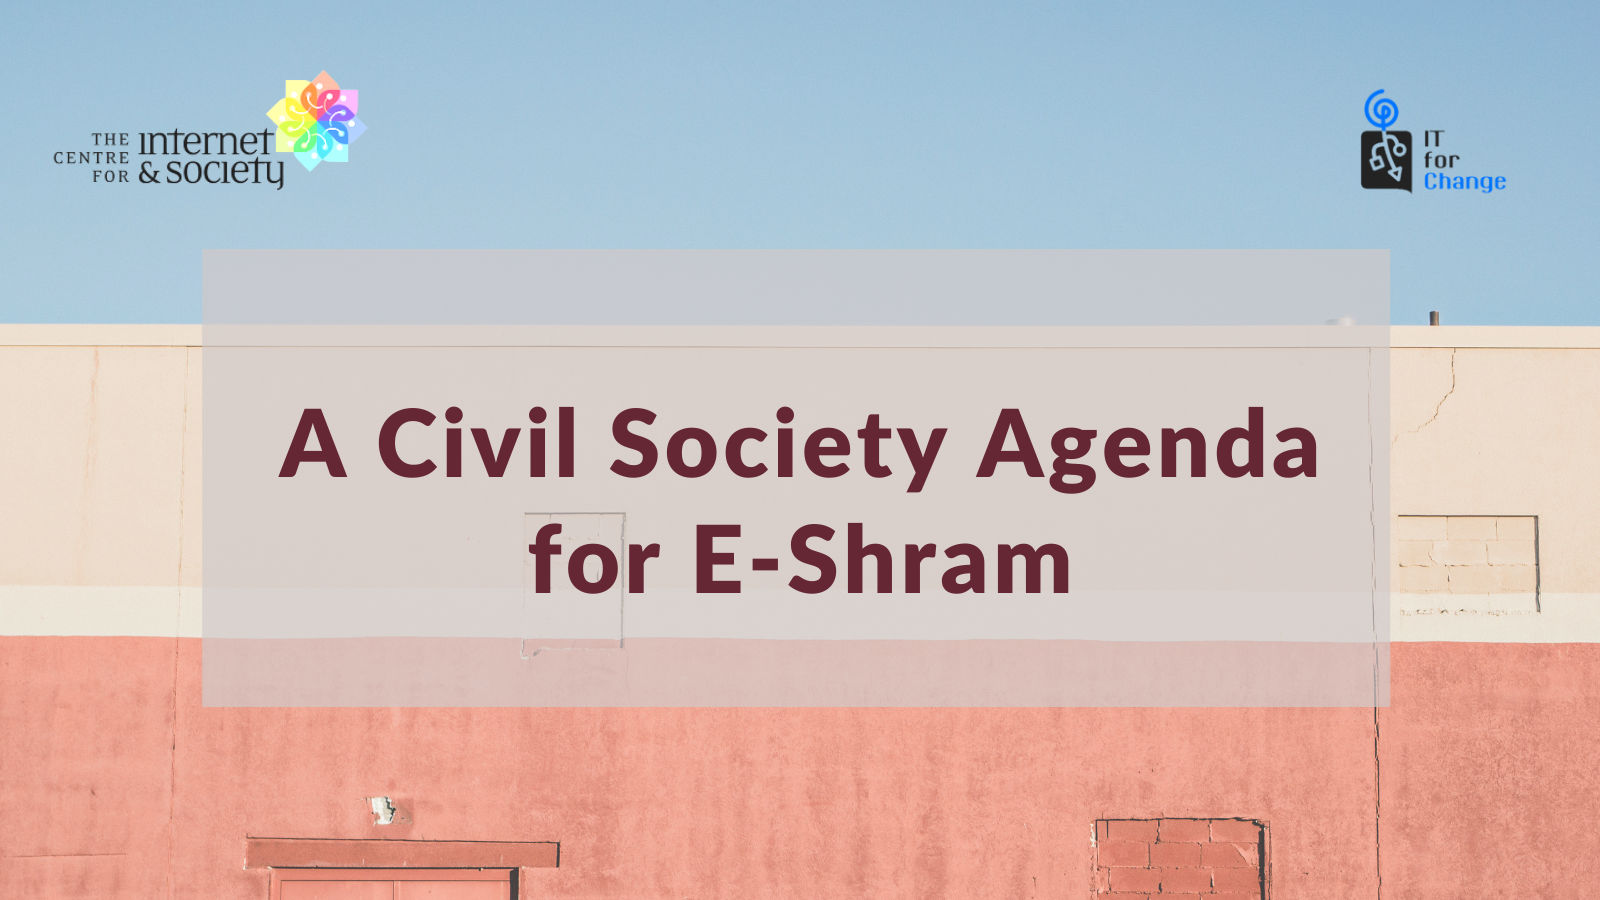  A Civil Society Agenda for e-Shram - CIS-ITfC